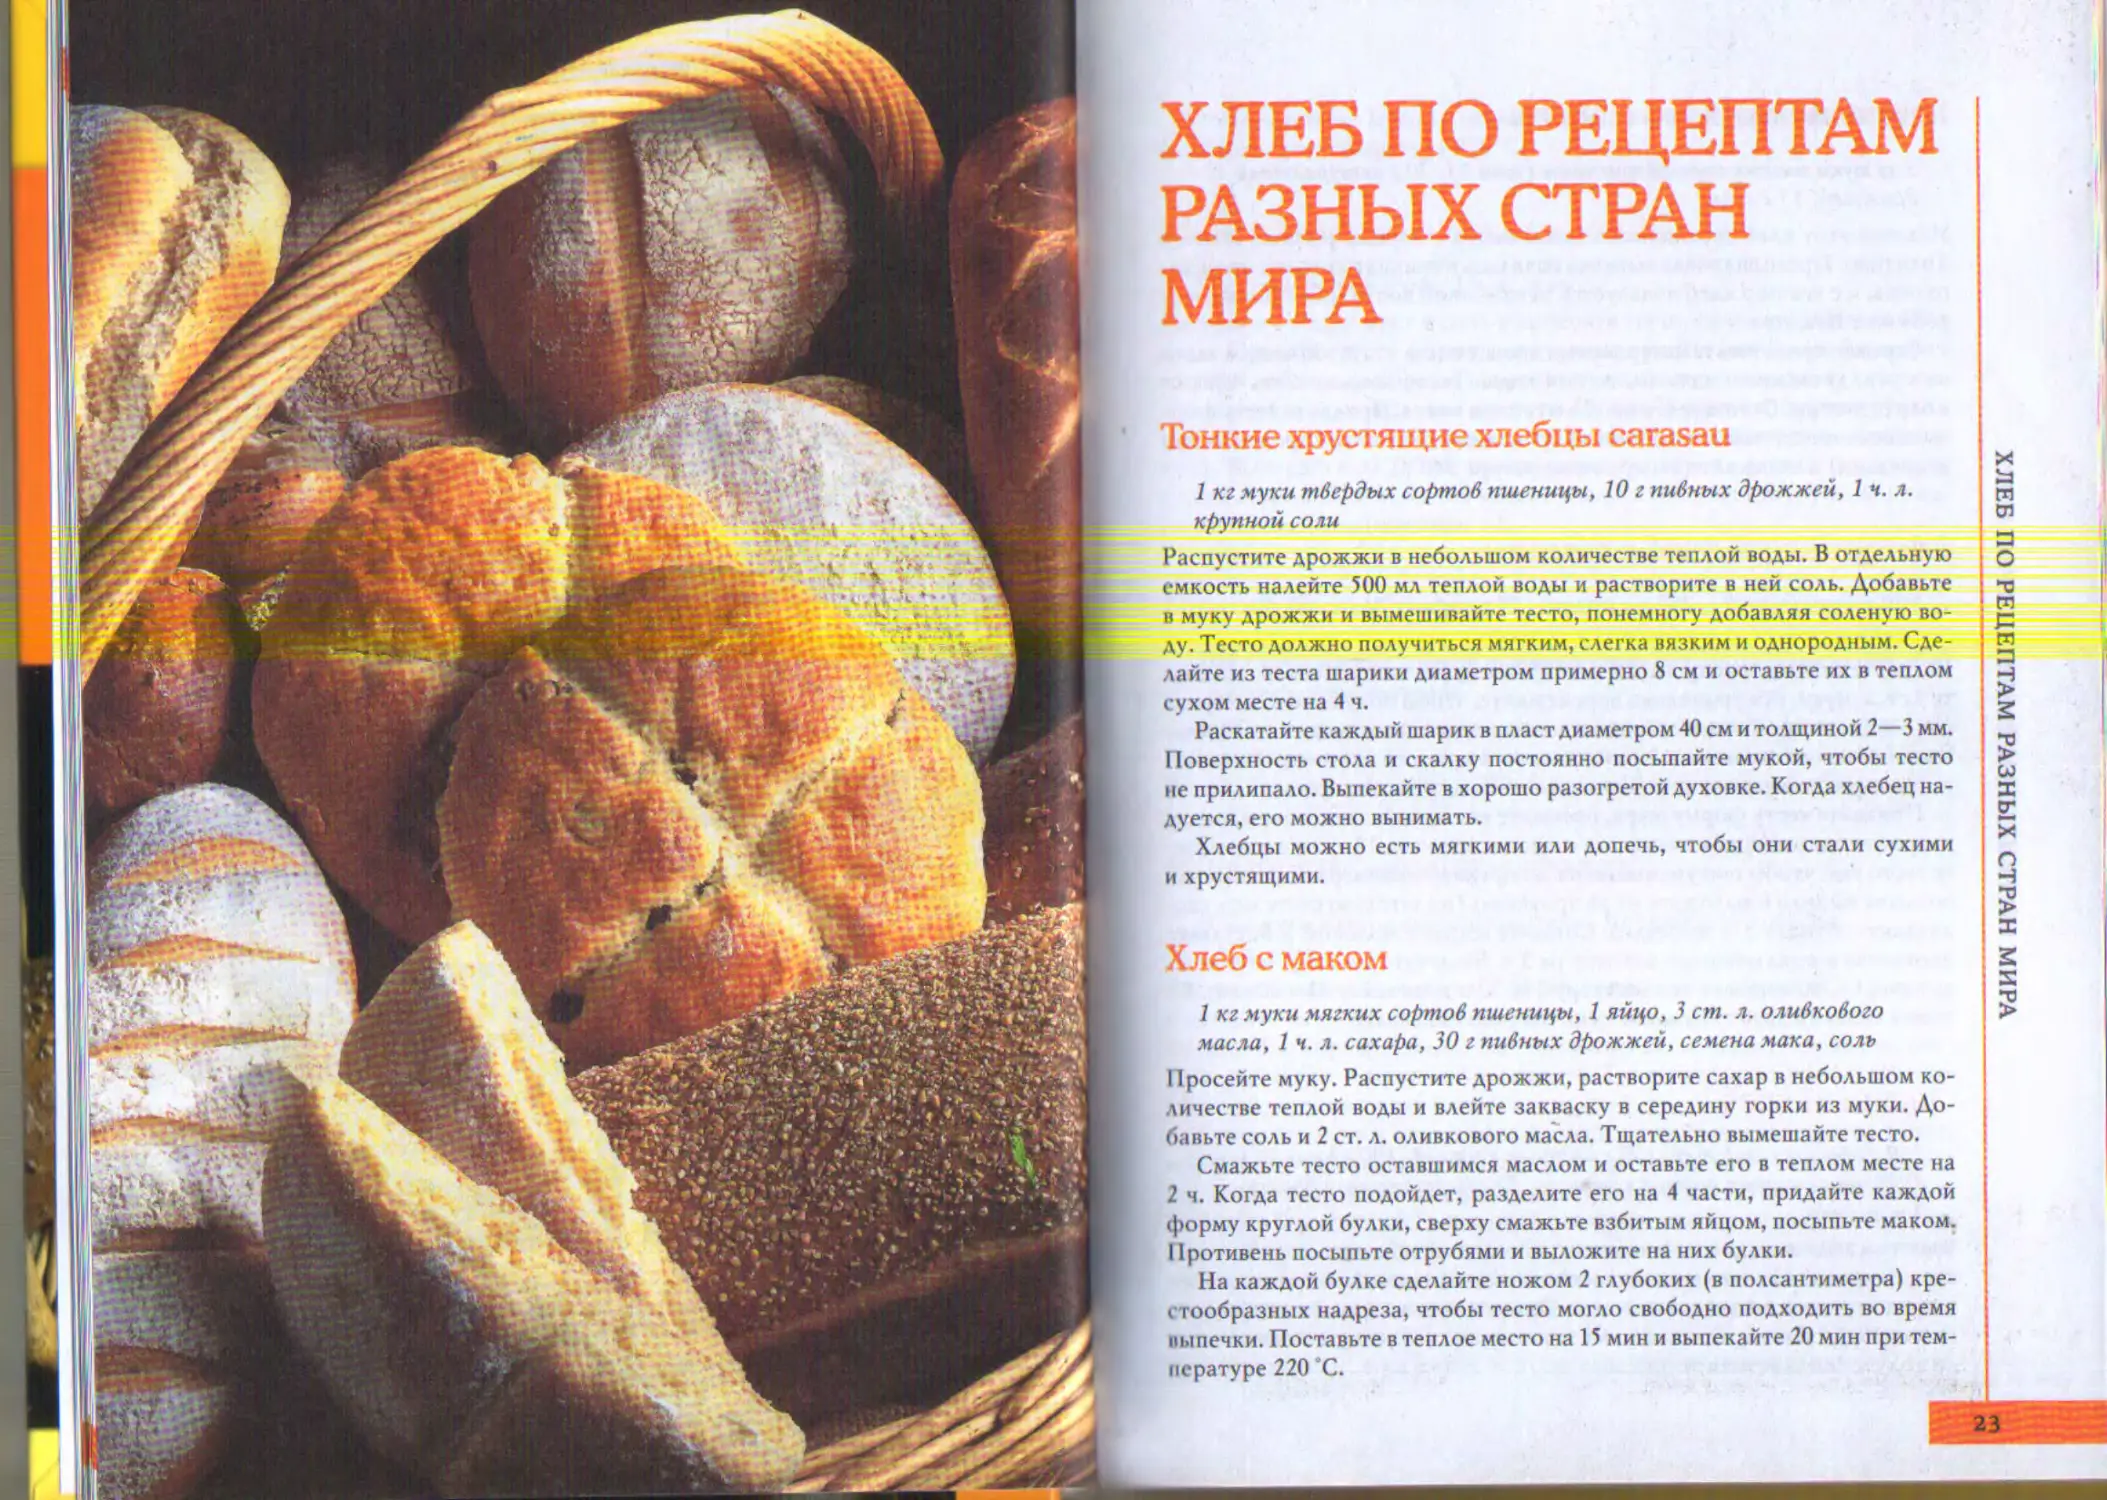 Рецепт хлеба от бельковича